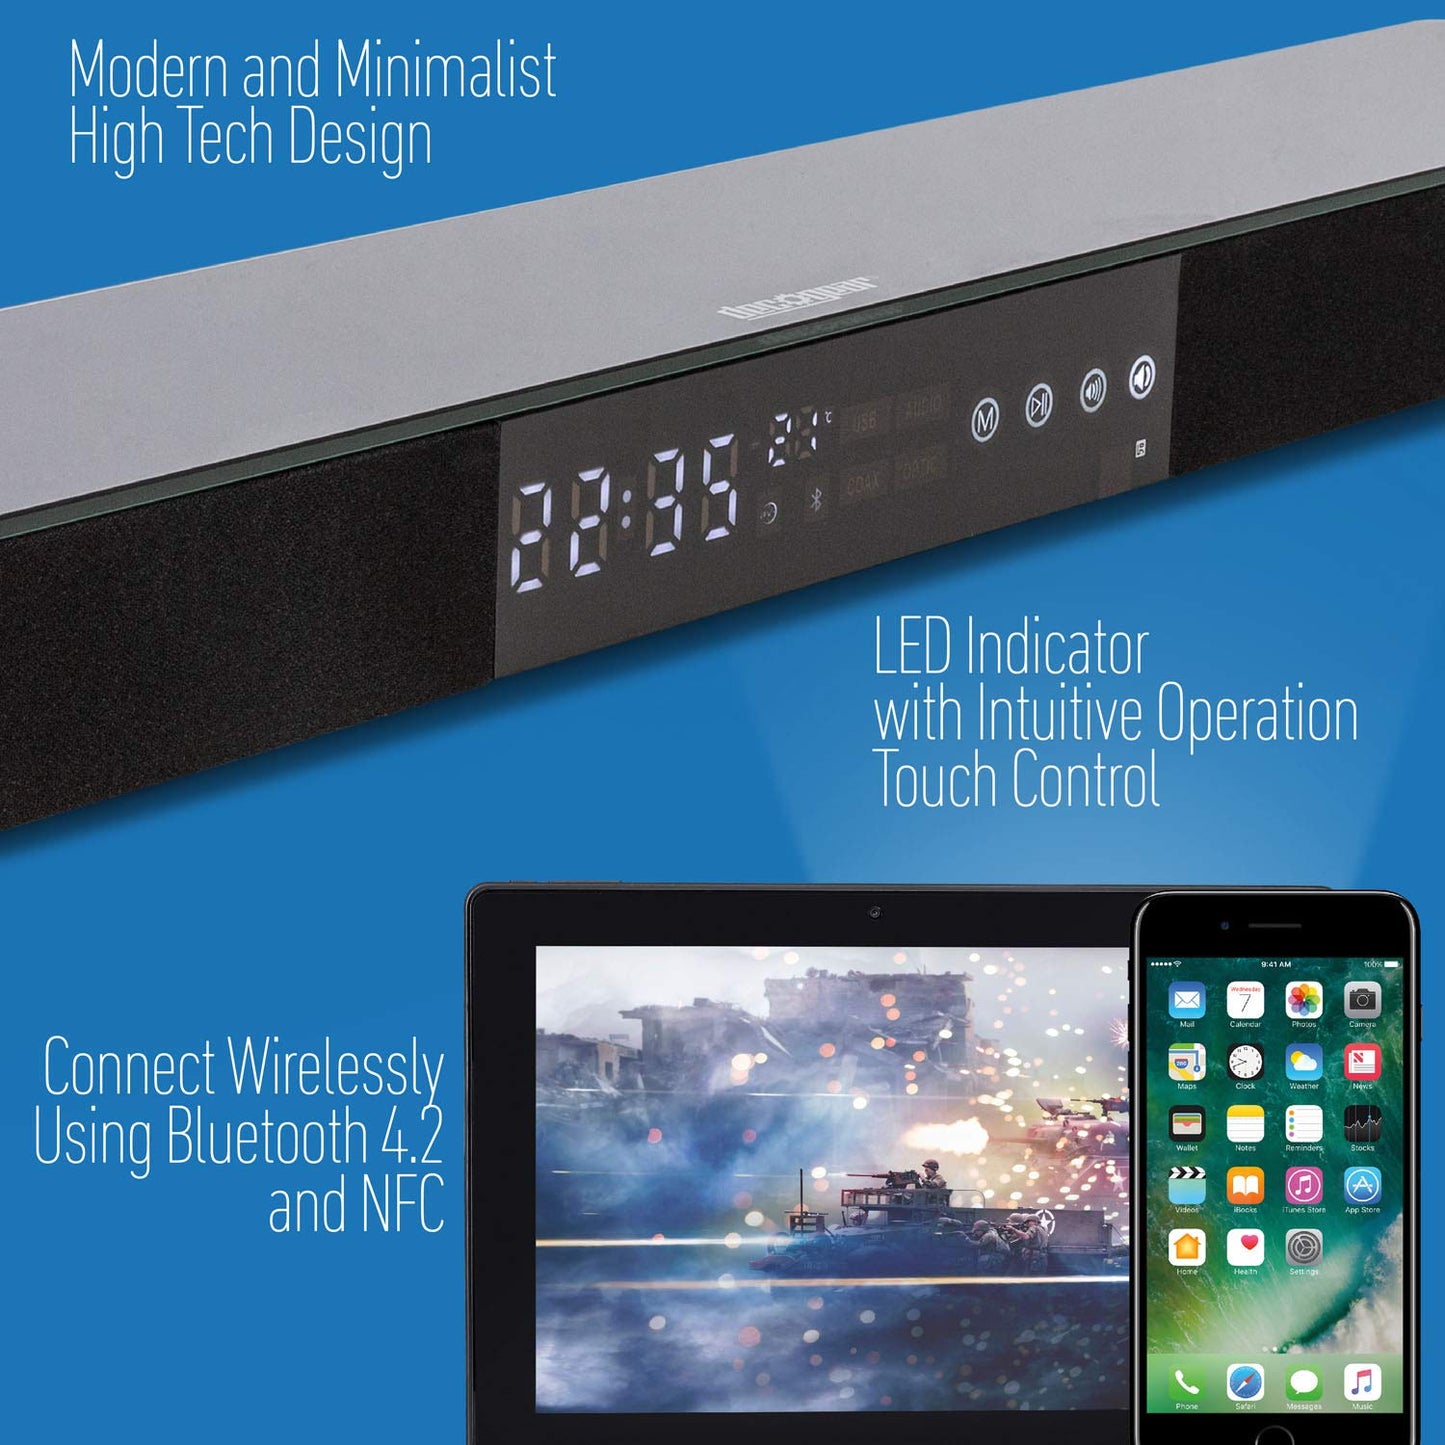 SAMSUNG UN43TU7000 43" 4K Ultra HD Smart LED TV (2020) with Deco Gear Soundbar Bundle